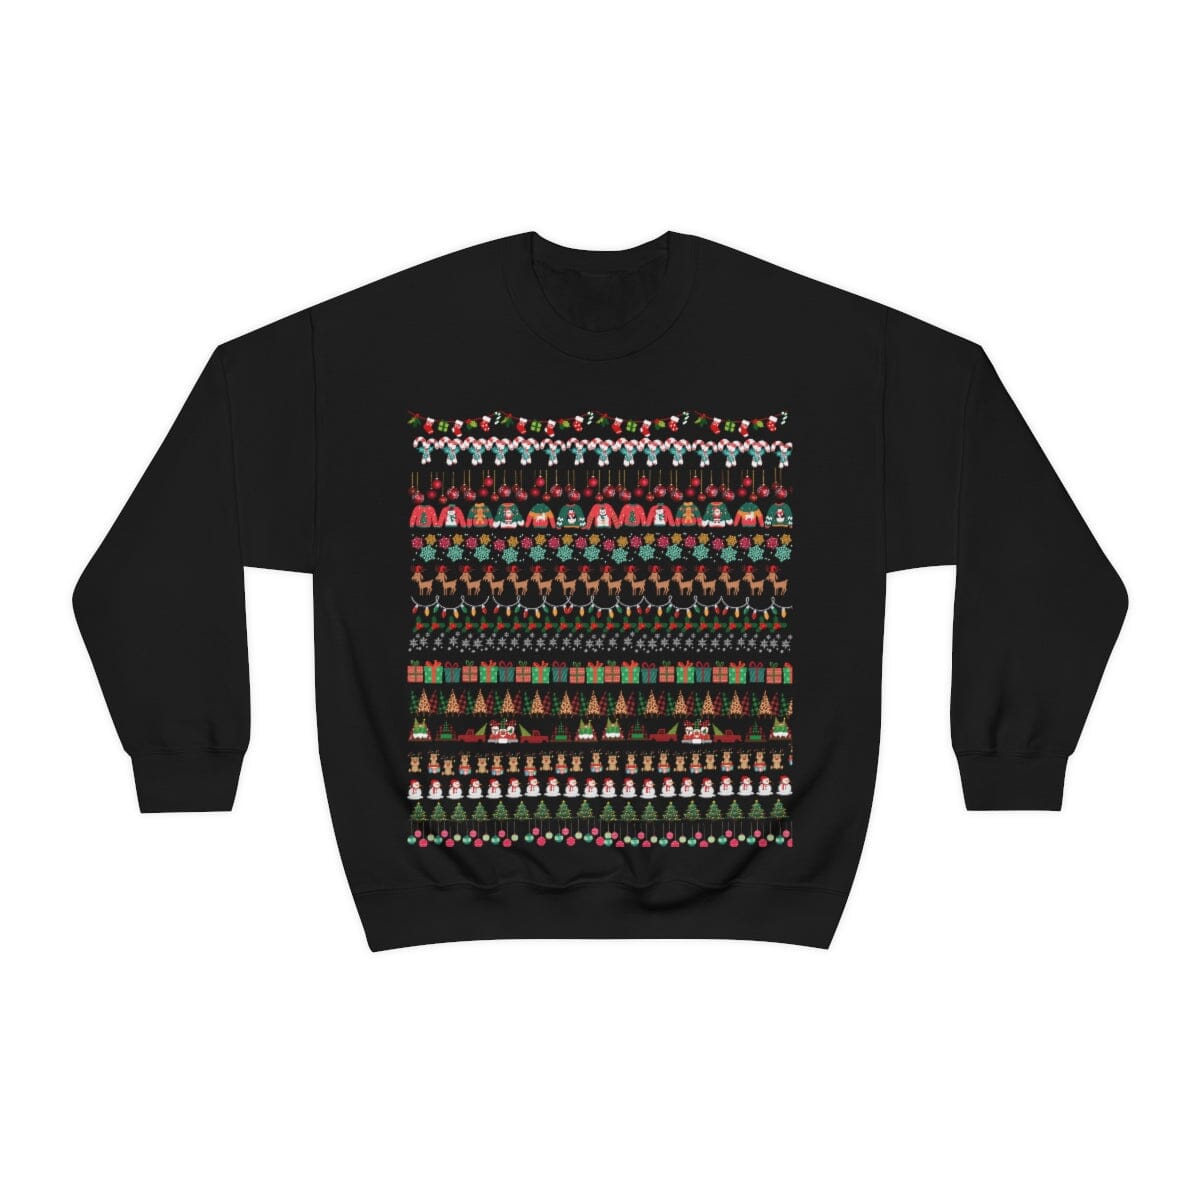 Sweather Navideño Unisex (Azul o Negro) - Ugly Christmas Sweather Sweatshirt Printify S Black 